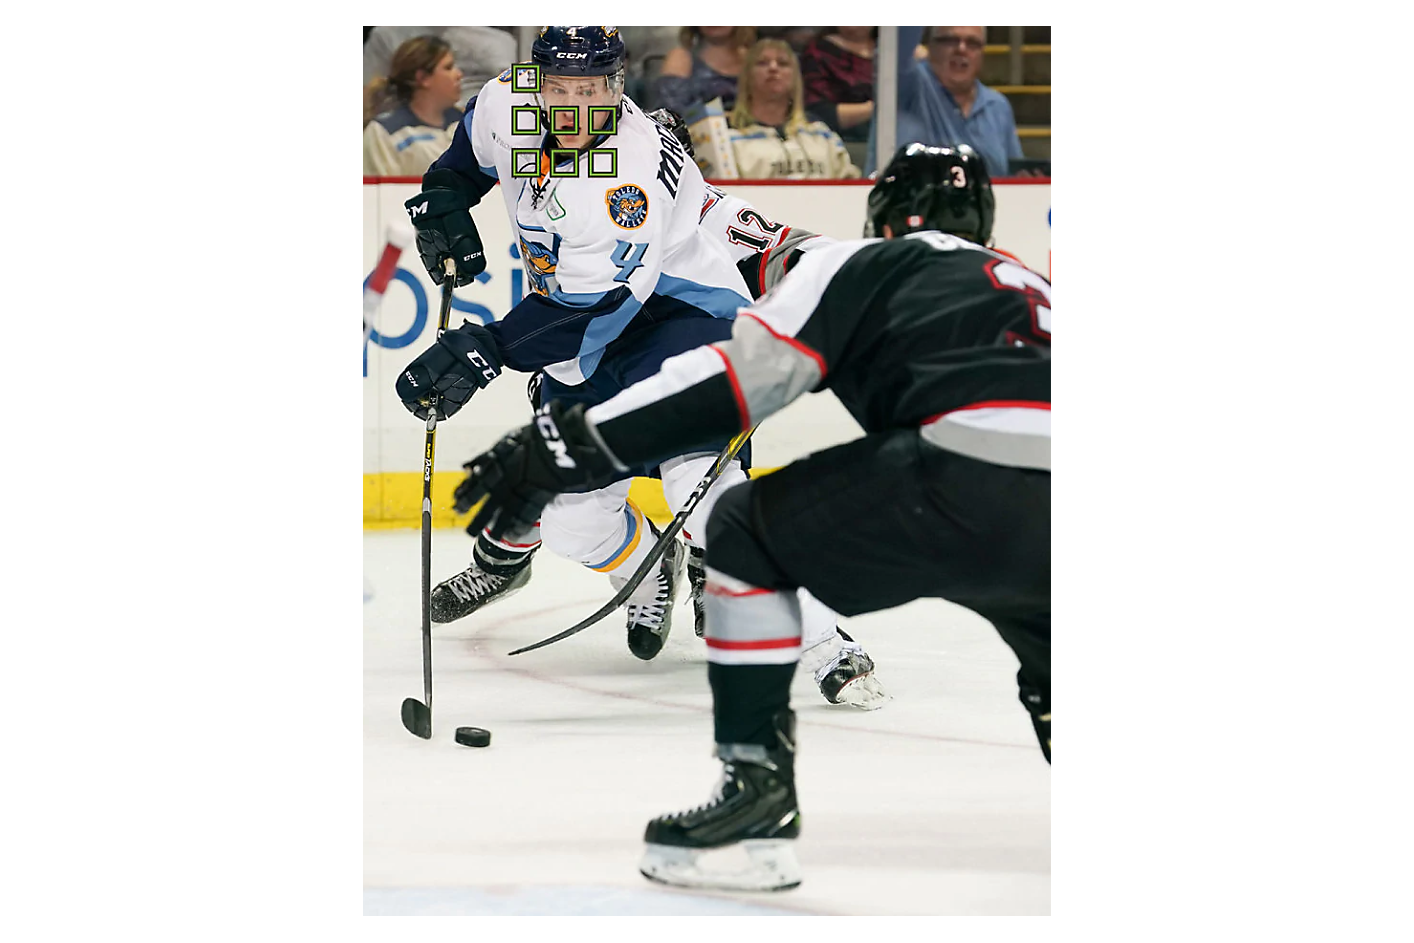 Dos jugadores de hockey luchan por el disco